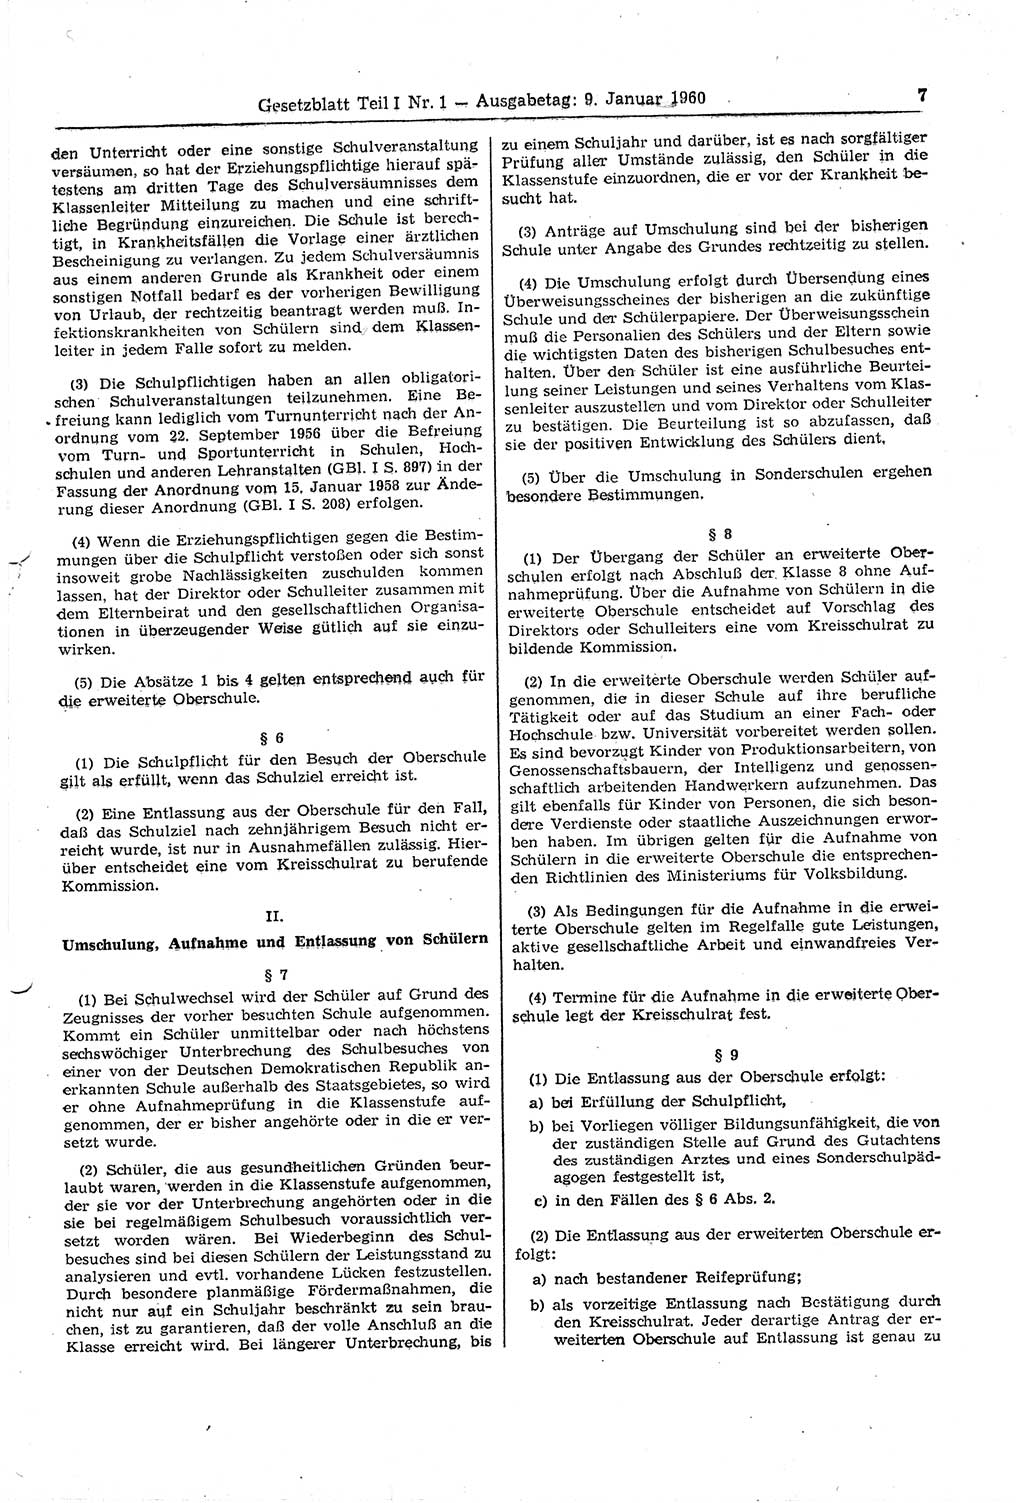 Gesetzblatt (GBl.) der Deutschen Demokratischen Republik (DDR) Teil Ⅰ 1960, Seite 7 (GBl. DDR Ⅰ 1960, S. 7)